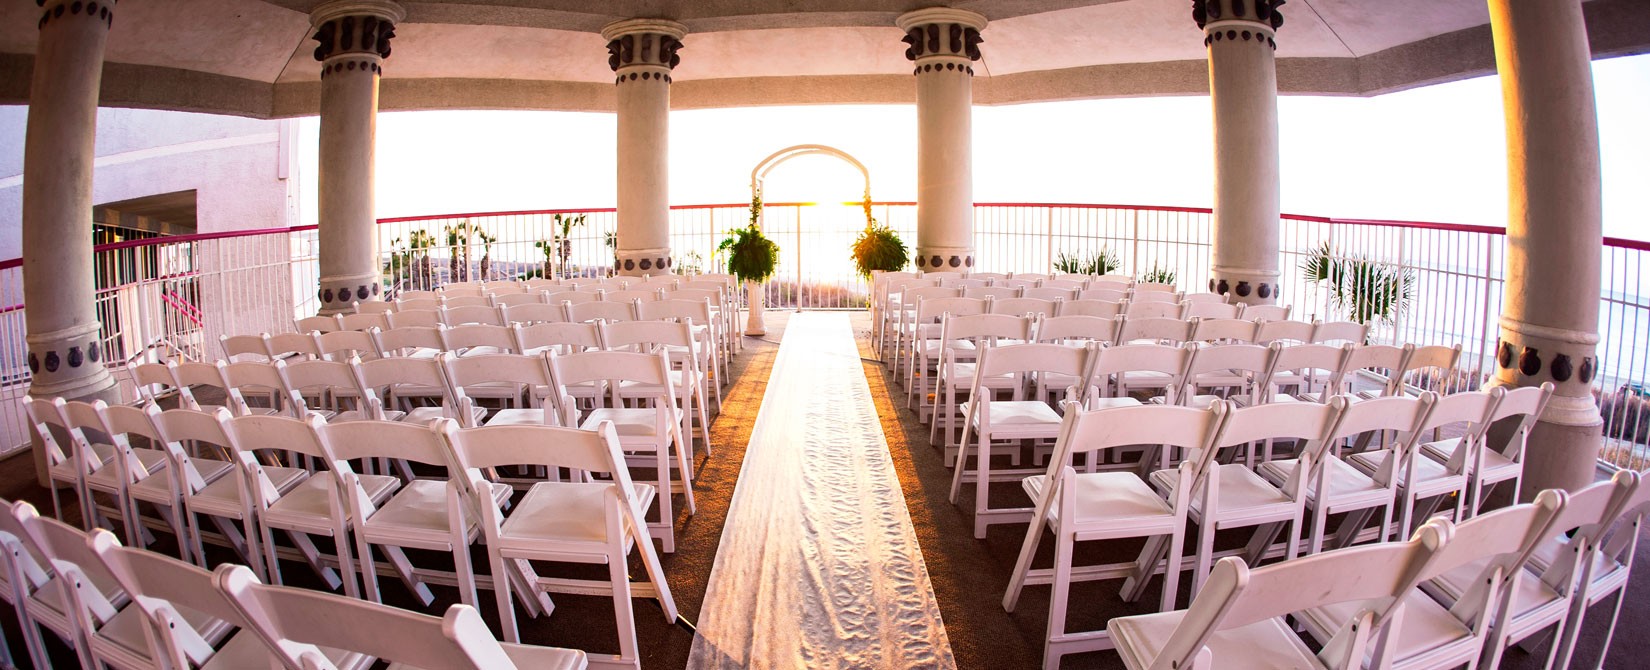 Wedding alter on outdoor patio overlooking the ocean at Crown Reef Resort